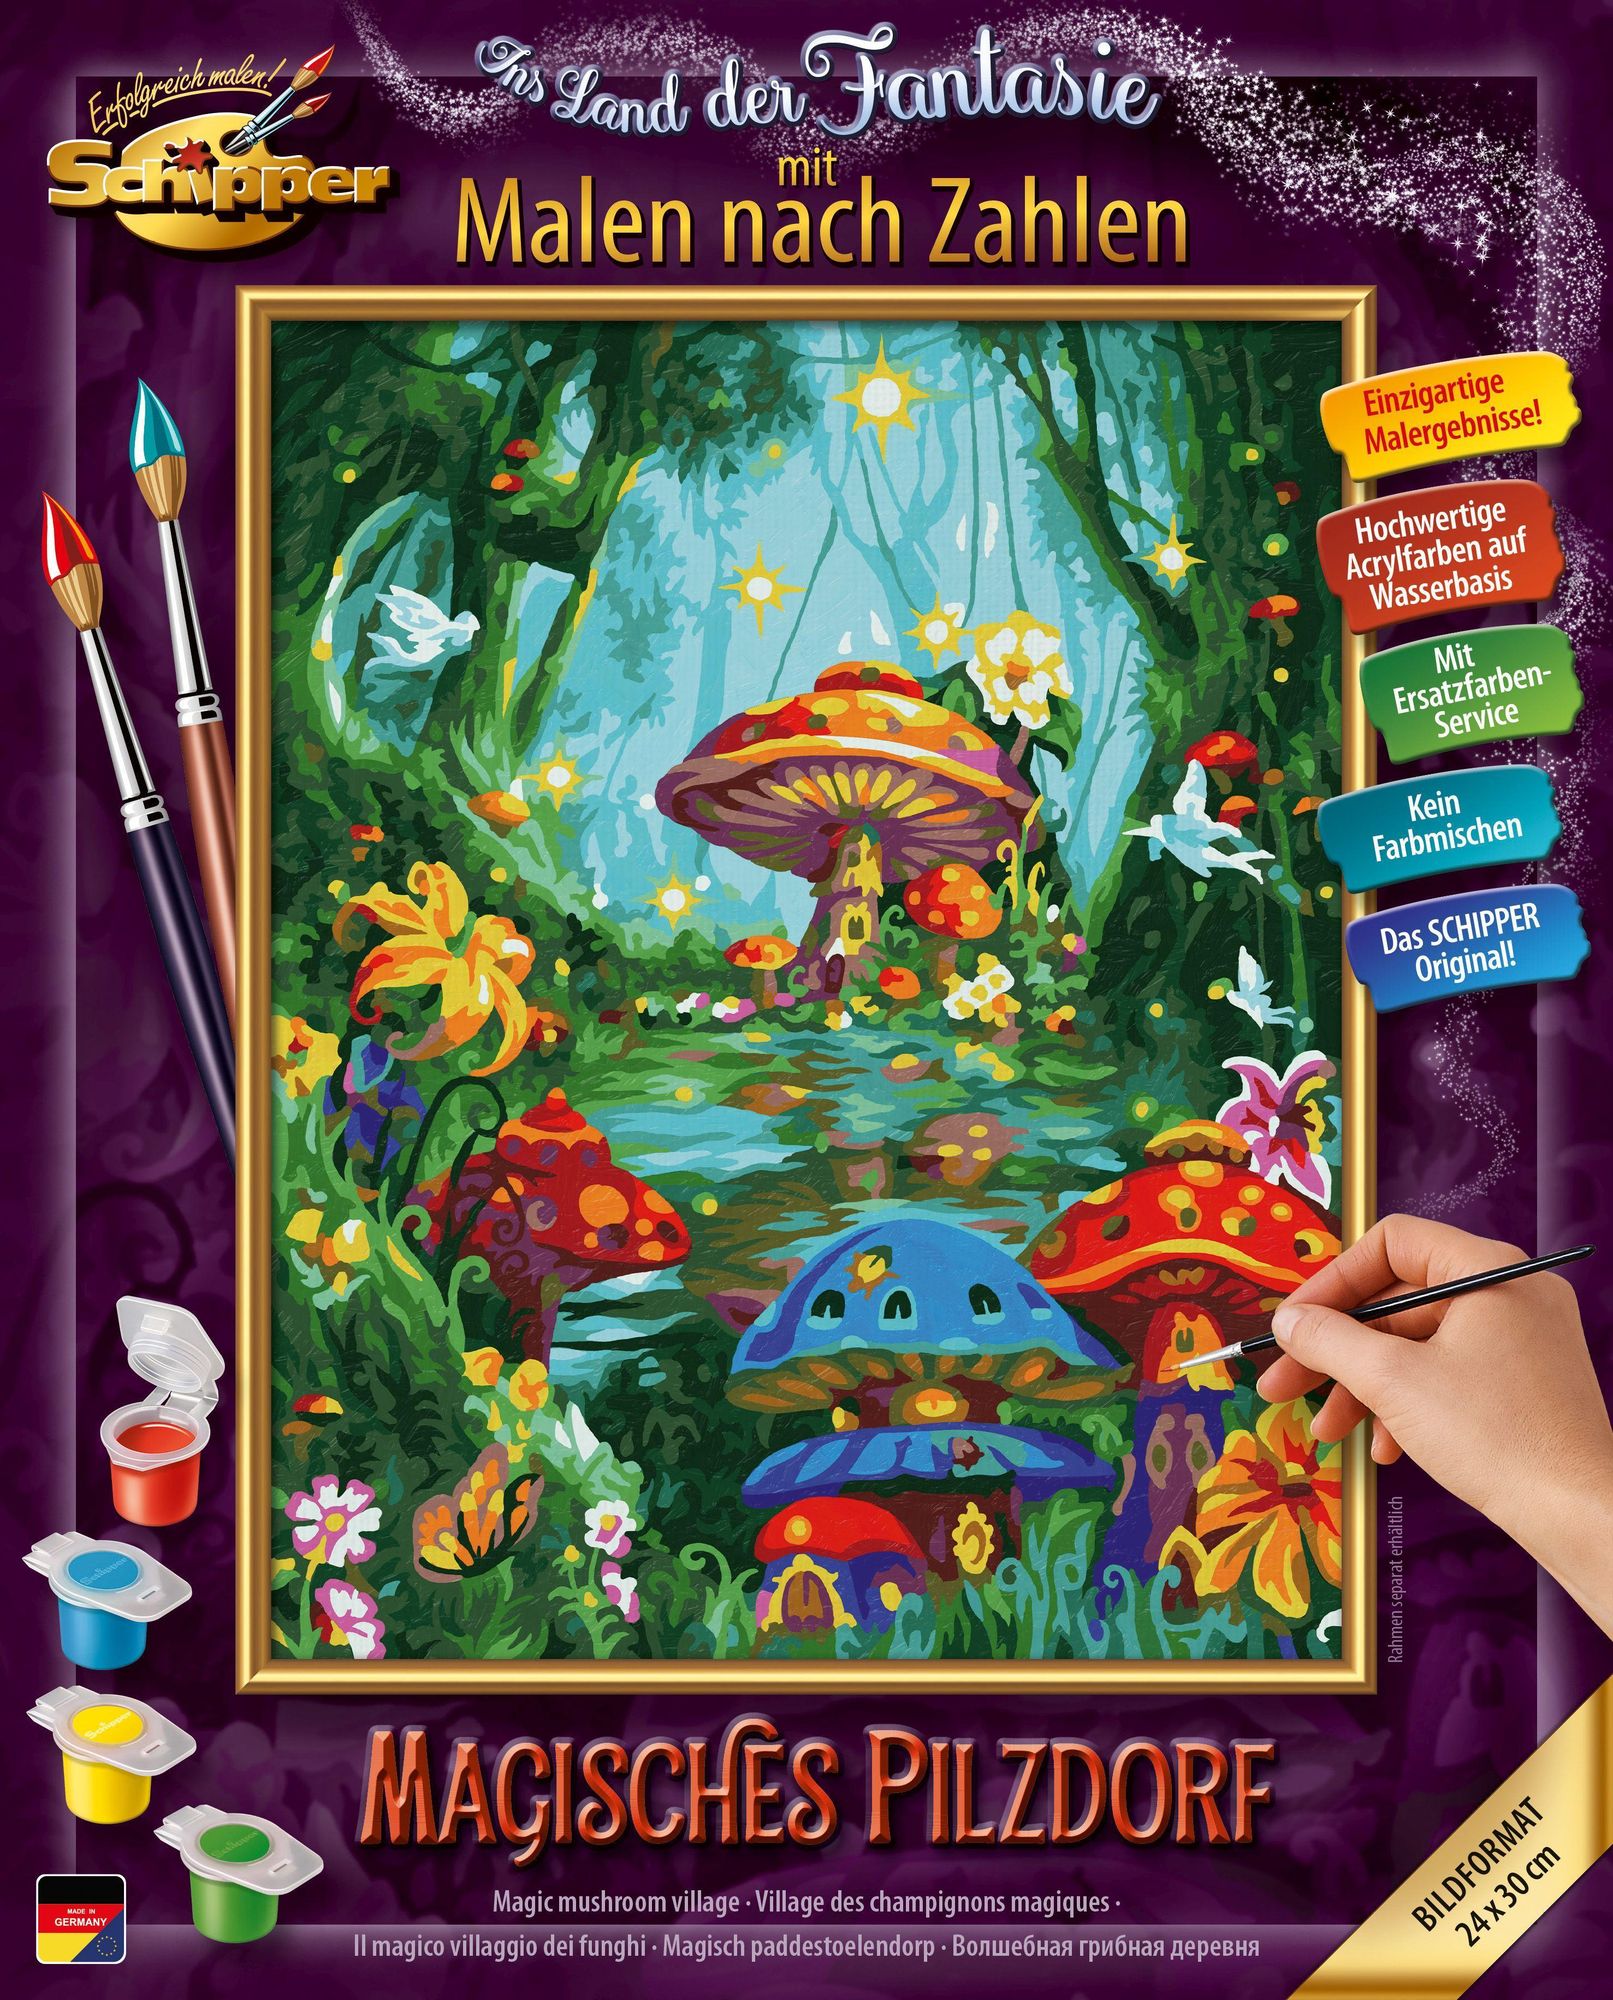 Schipper kaufen - Zahlen, 24 - cm\' Magisches Spielwaren 30 Pilzdorf, Malen nach 609240867 x